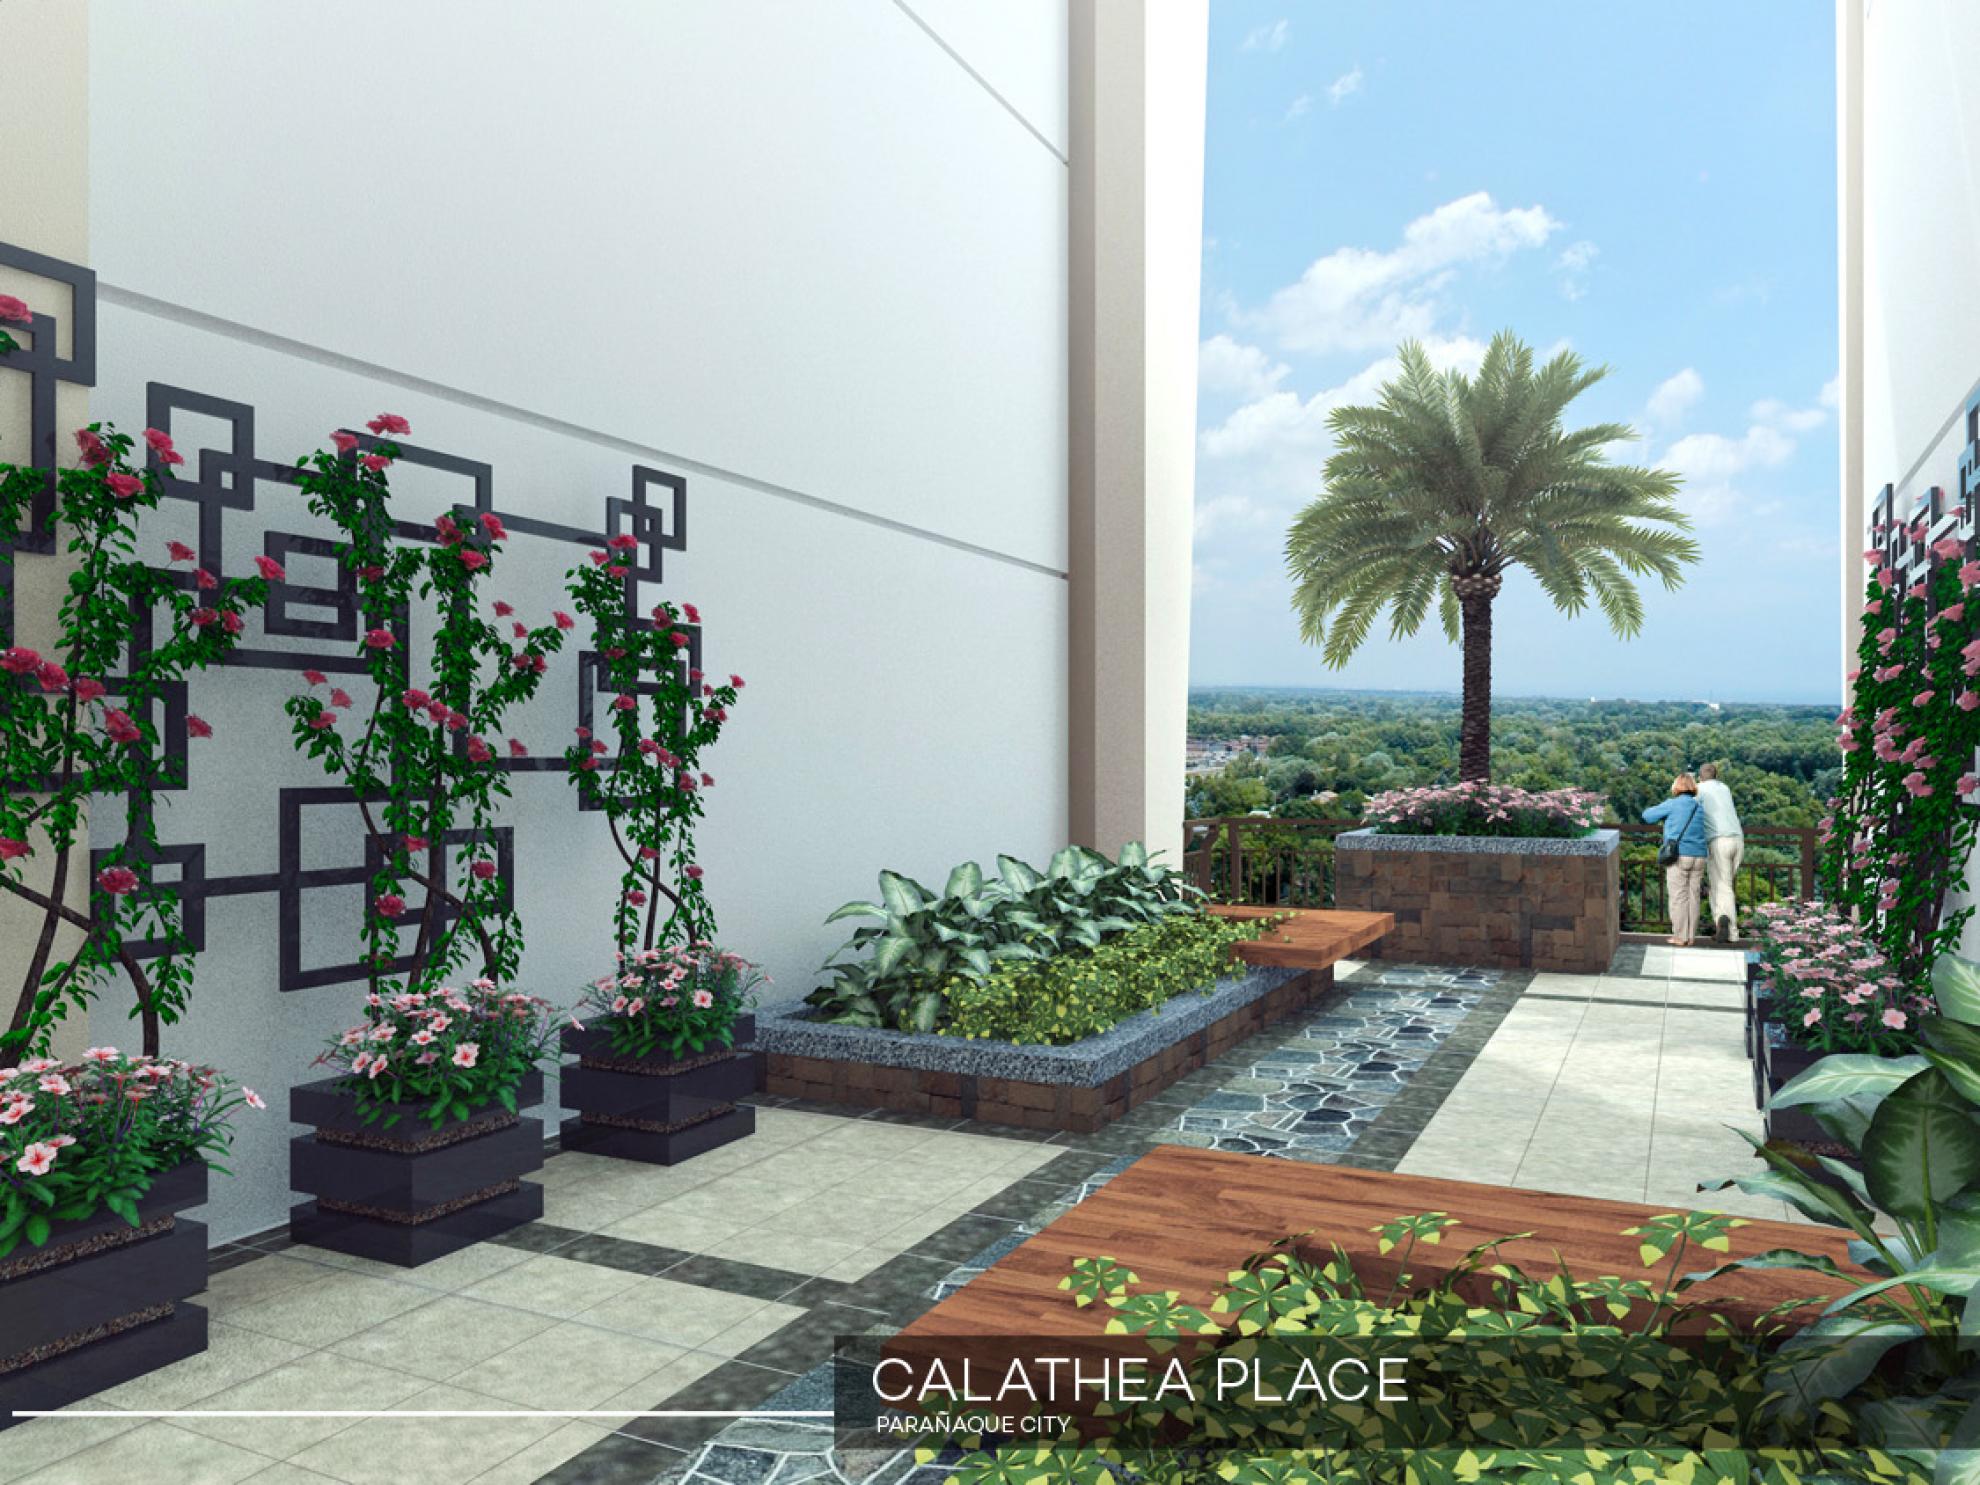 Calathea Place roof garden